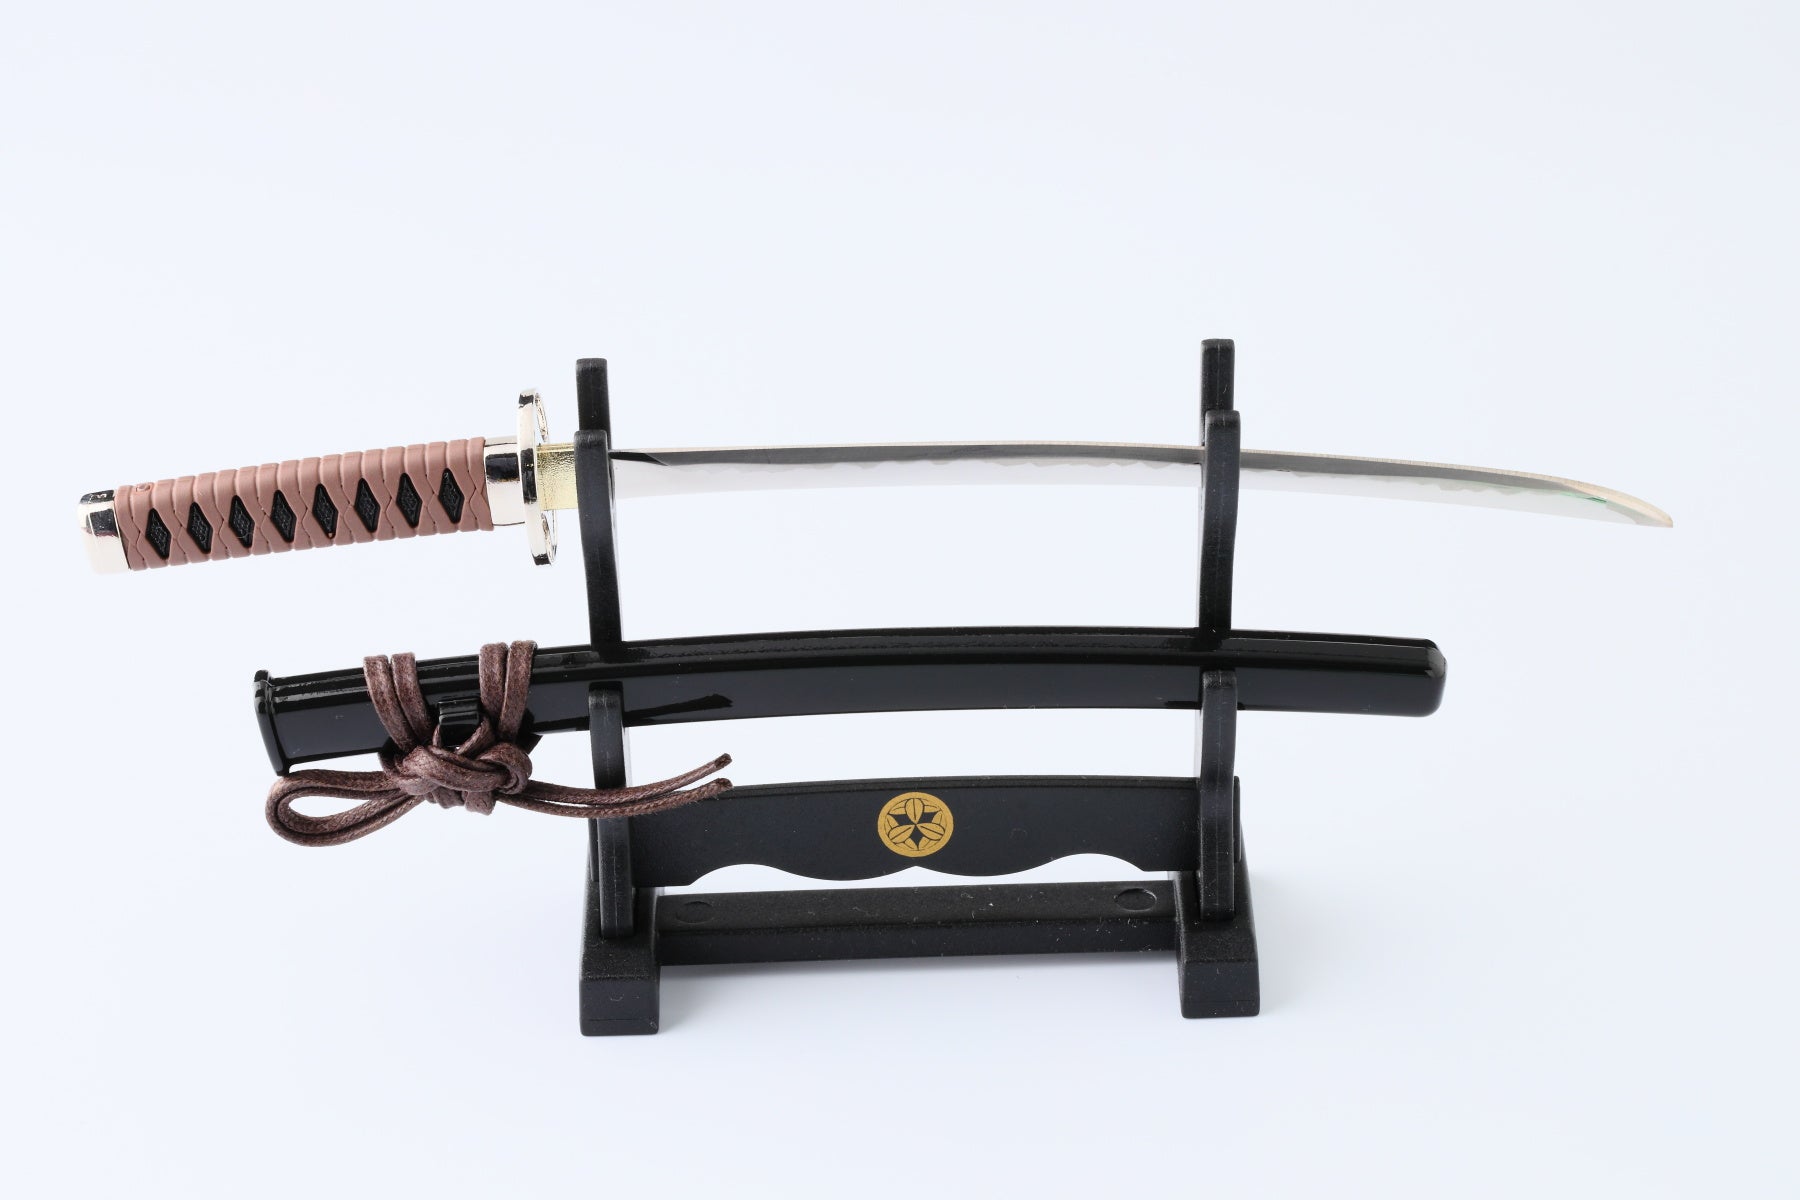 Letter Opener SAMURAI KATANA SWORD Knife Desk Decor item 8 inch Length Safe Edge Saito Hajime Model MT-34H - JAPANESE GIFTS 